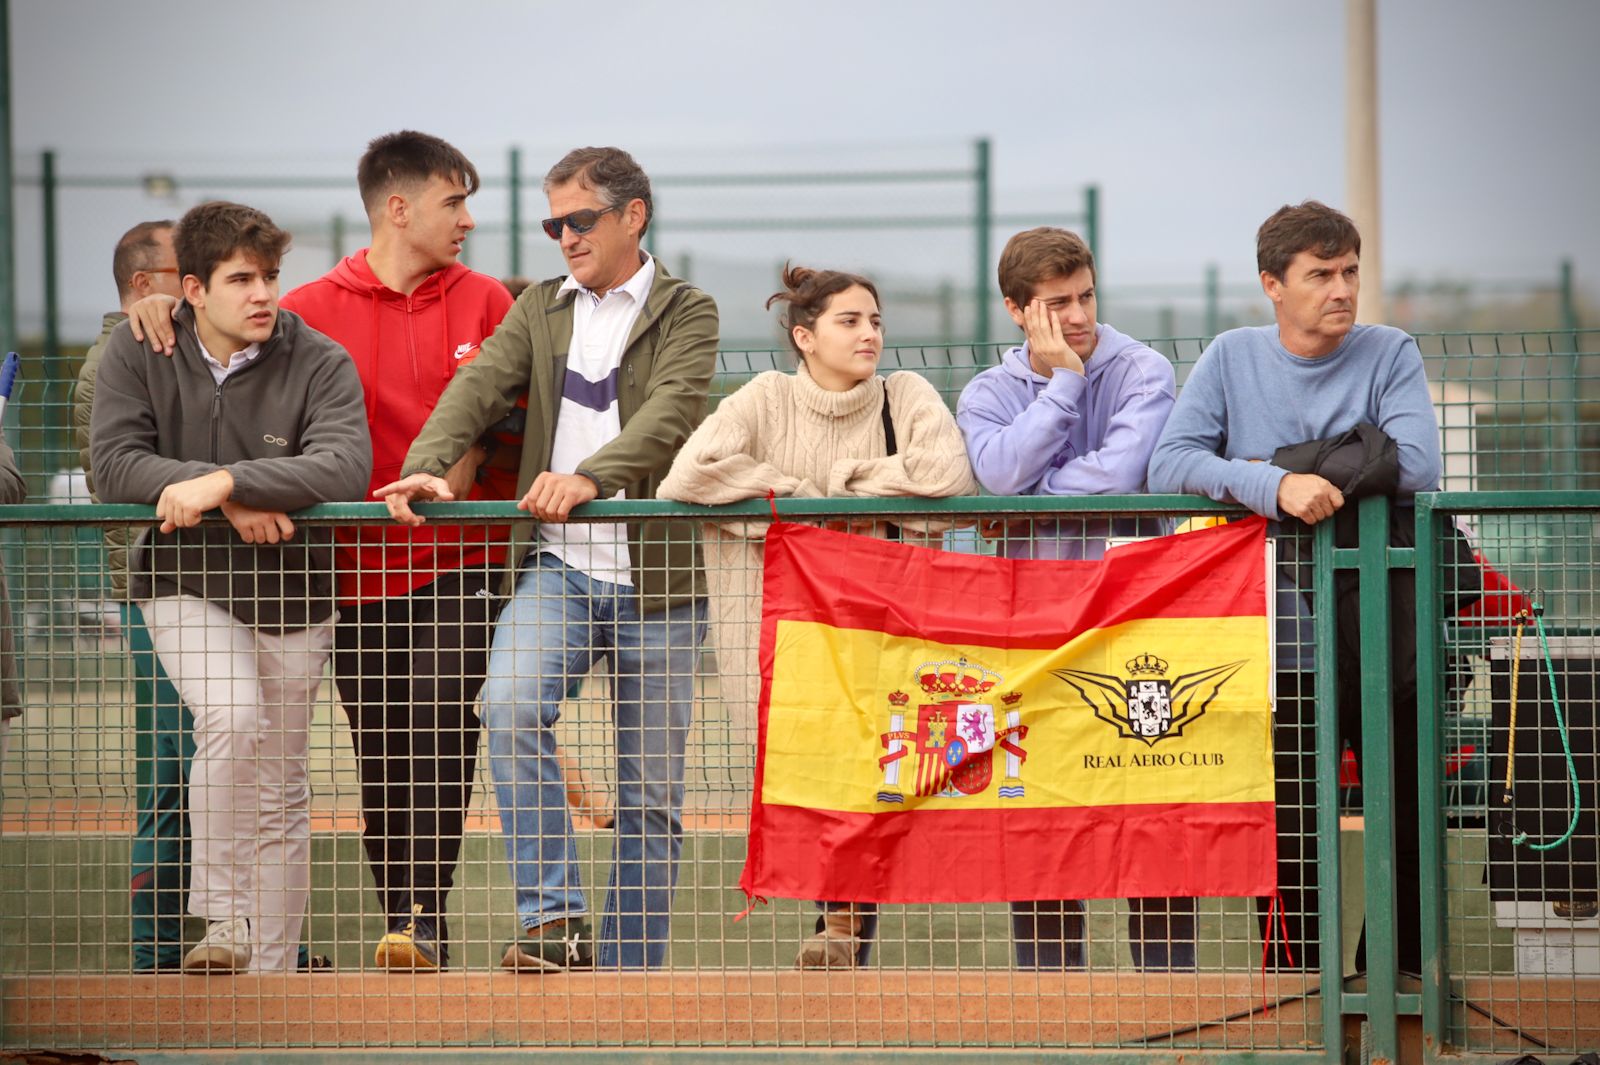 Las rondas finales de la Copa Davis Júnior de tenis en Córdoba, en imágenes